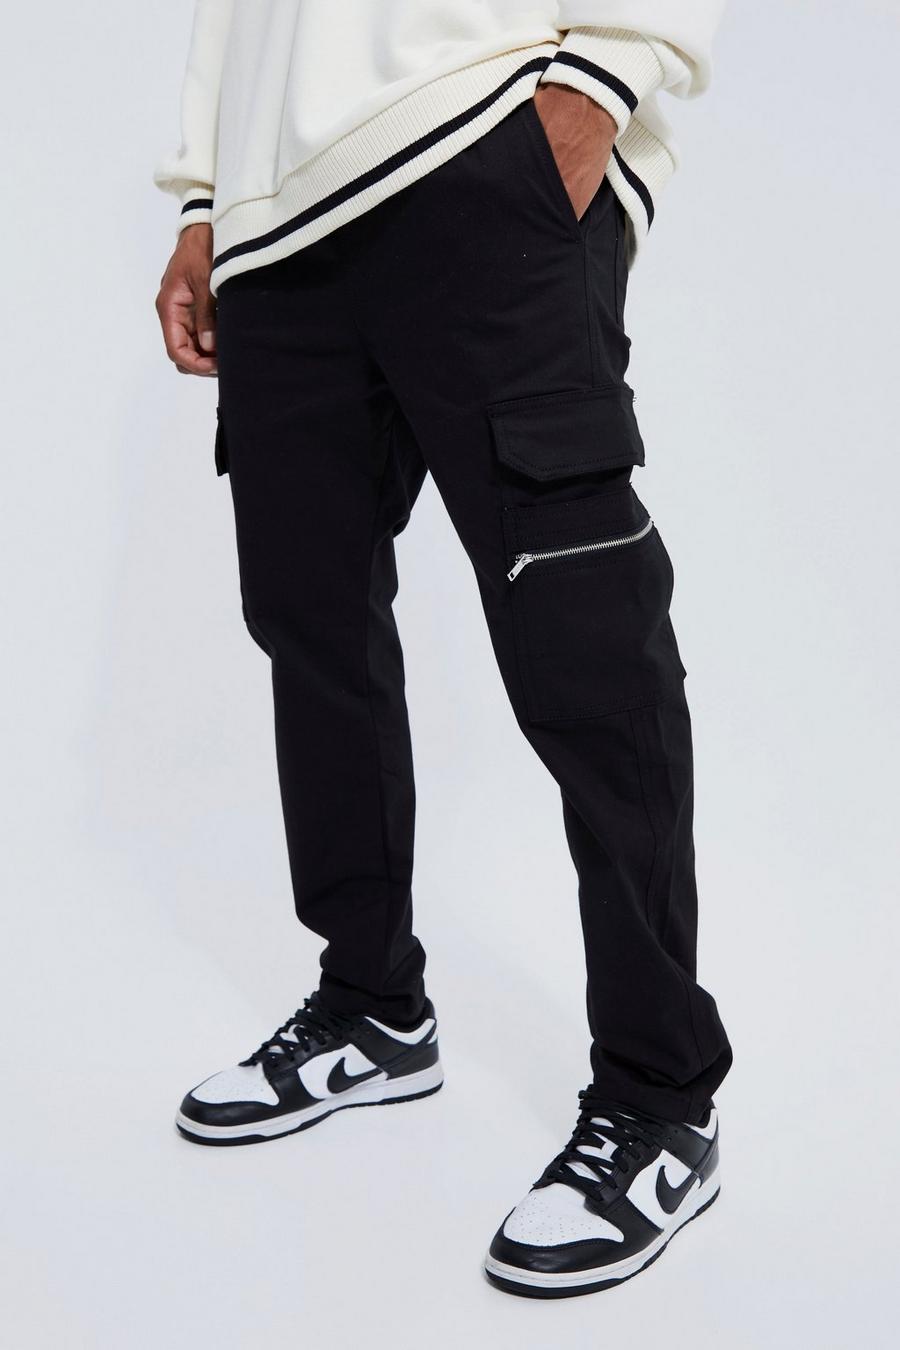 Pantalón corto cargo utilitario ajustado, Black nero